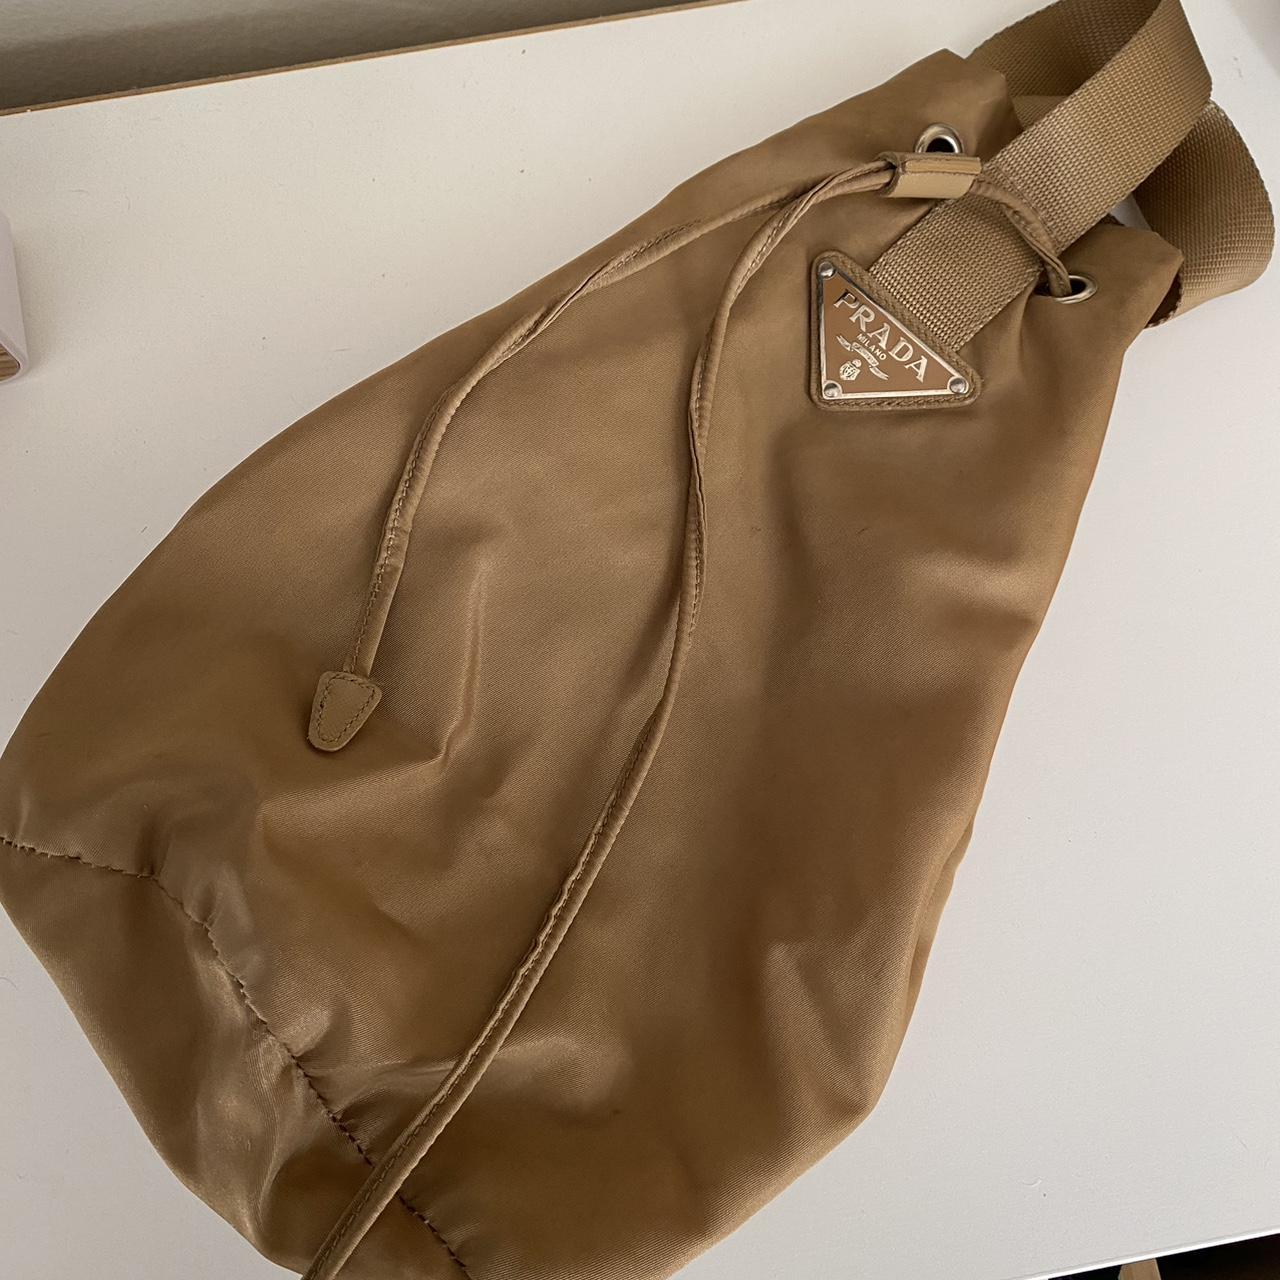 Vintage Prada Messenger bag. Bought in Italy. Made - Depop